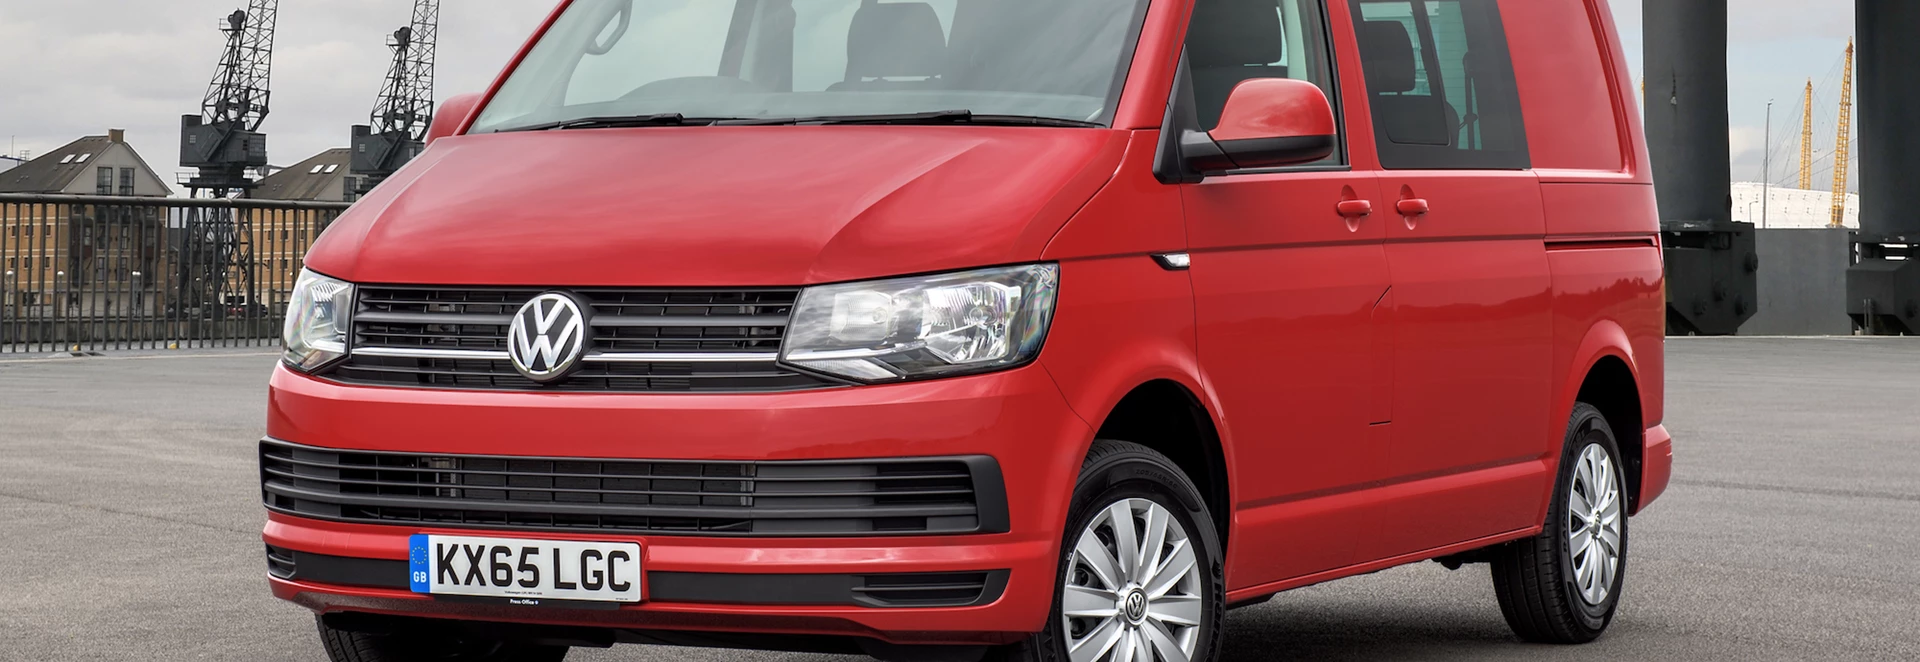 2019 Volkswagen Transporter Kombi Edition review